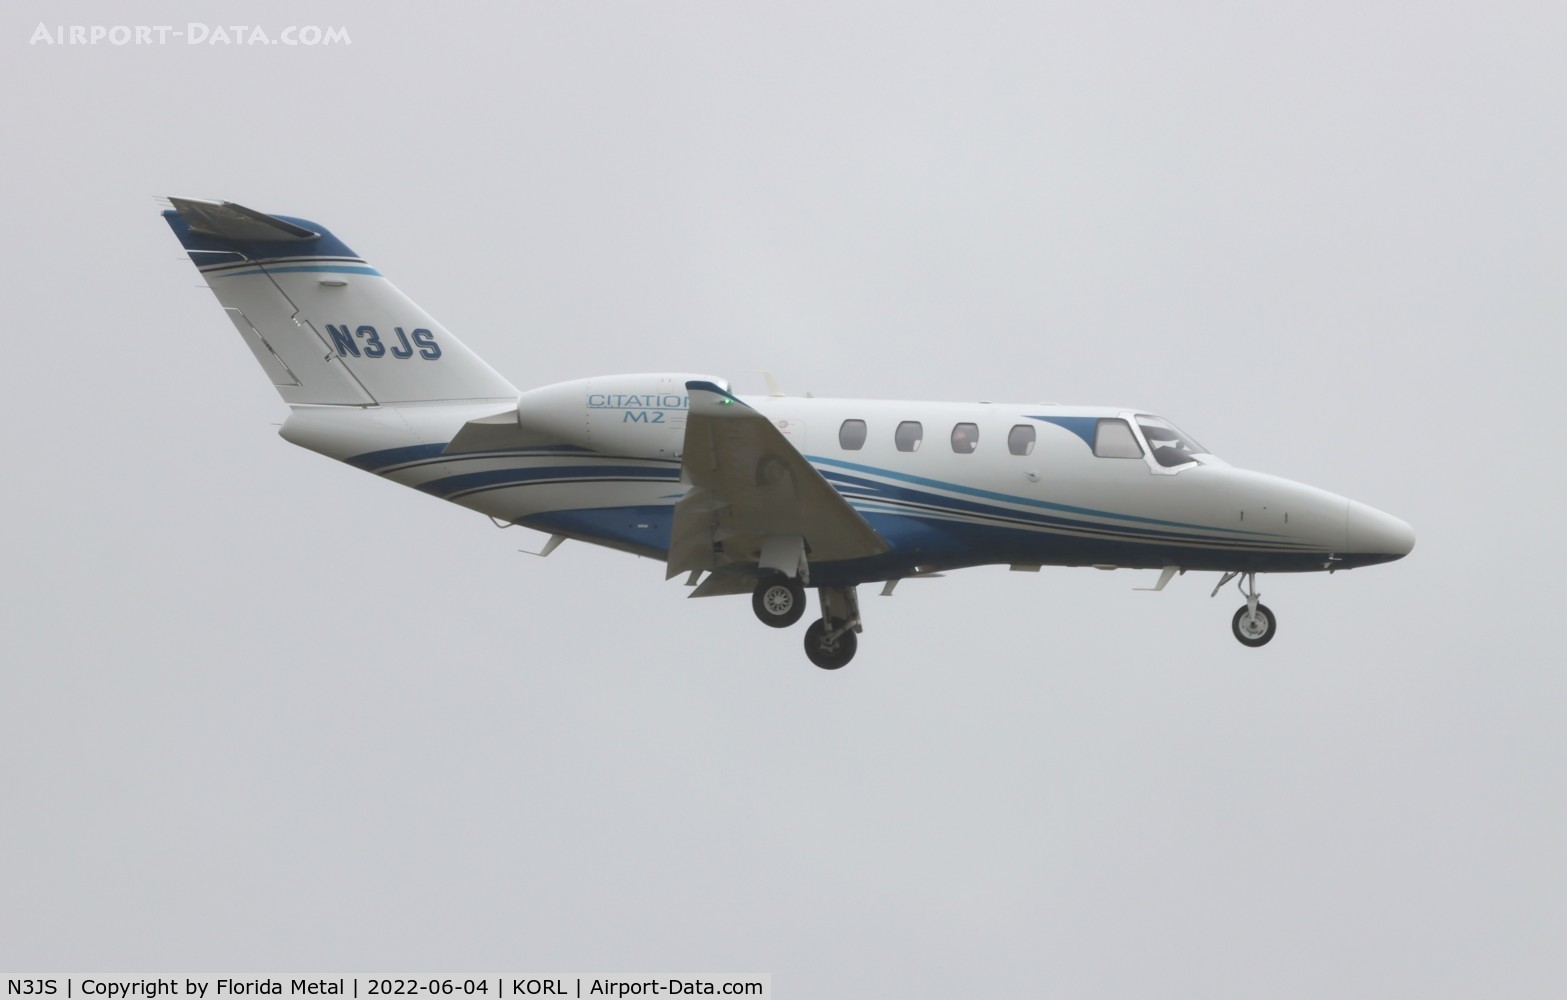 N3JS, 2020 Cessna 525 Citation M2 C/N 525-1052, Citation M2